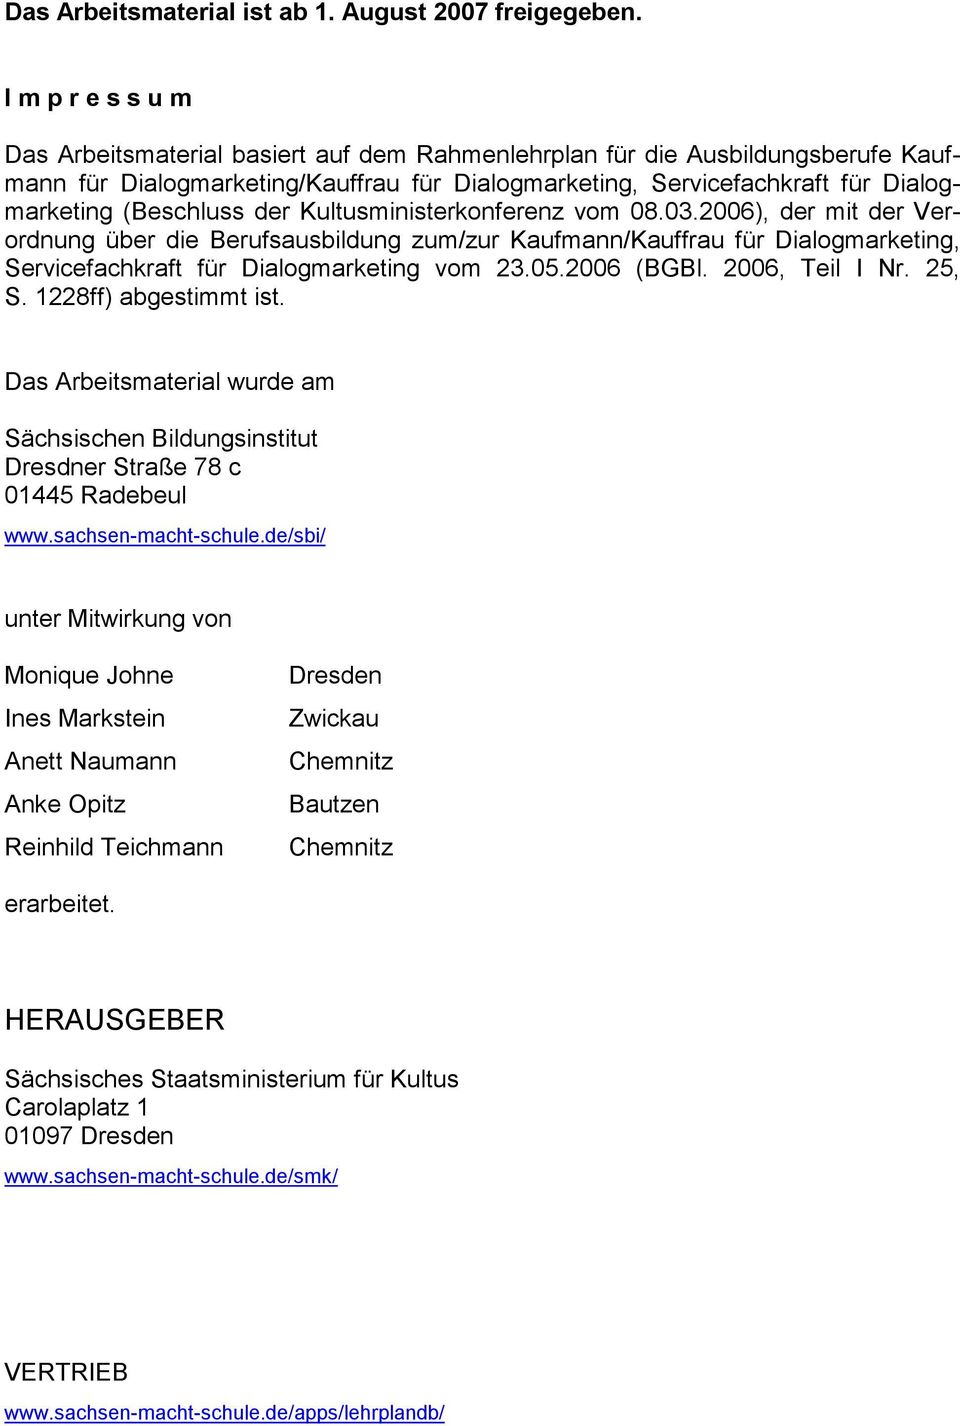 (Beschluss der Kultusministerkonferenz vom 08.03.2006), der mit der Verordnung über die Berufsausbildung zum/zur Kaufmann/Kauffrau für Dialogmarketing, Servicefachkraft für Dialogmarketing vom 23.05.